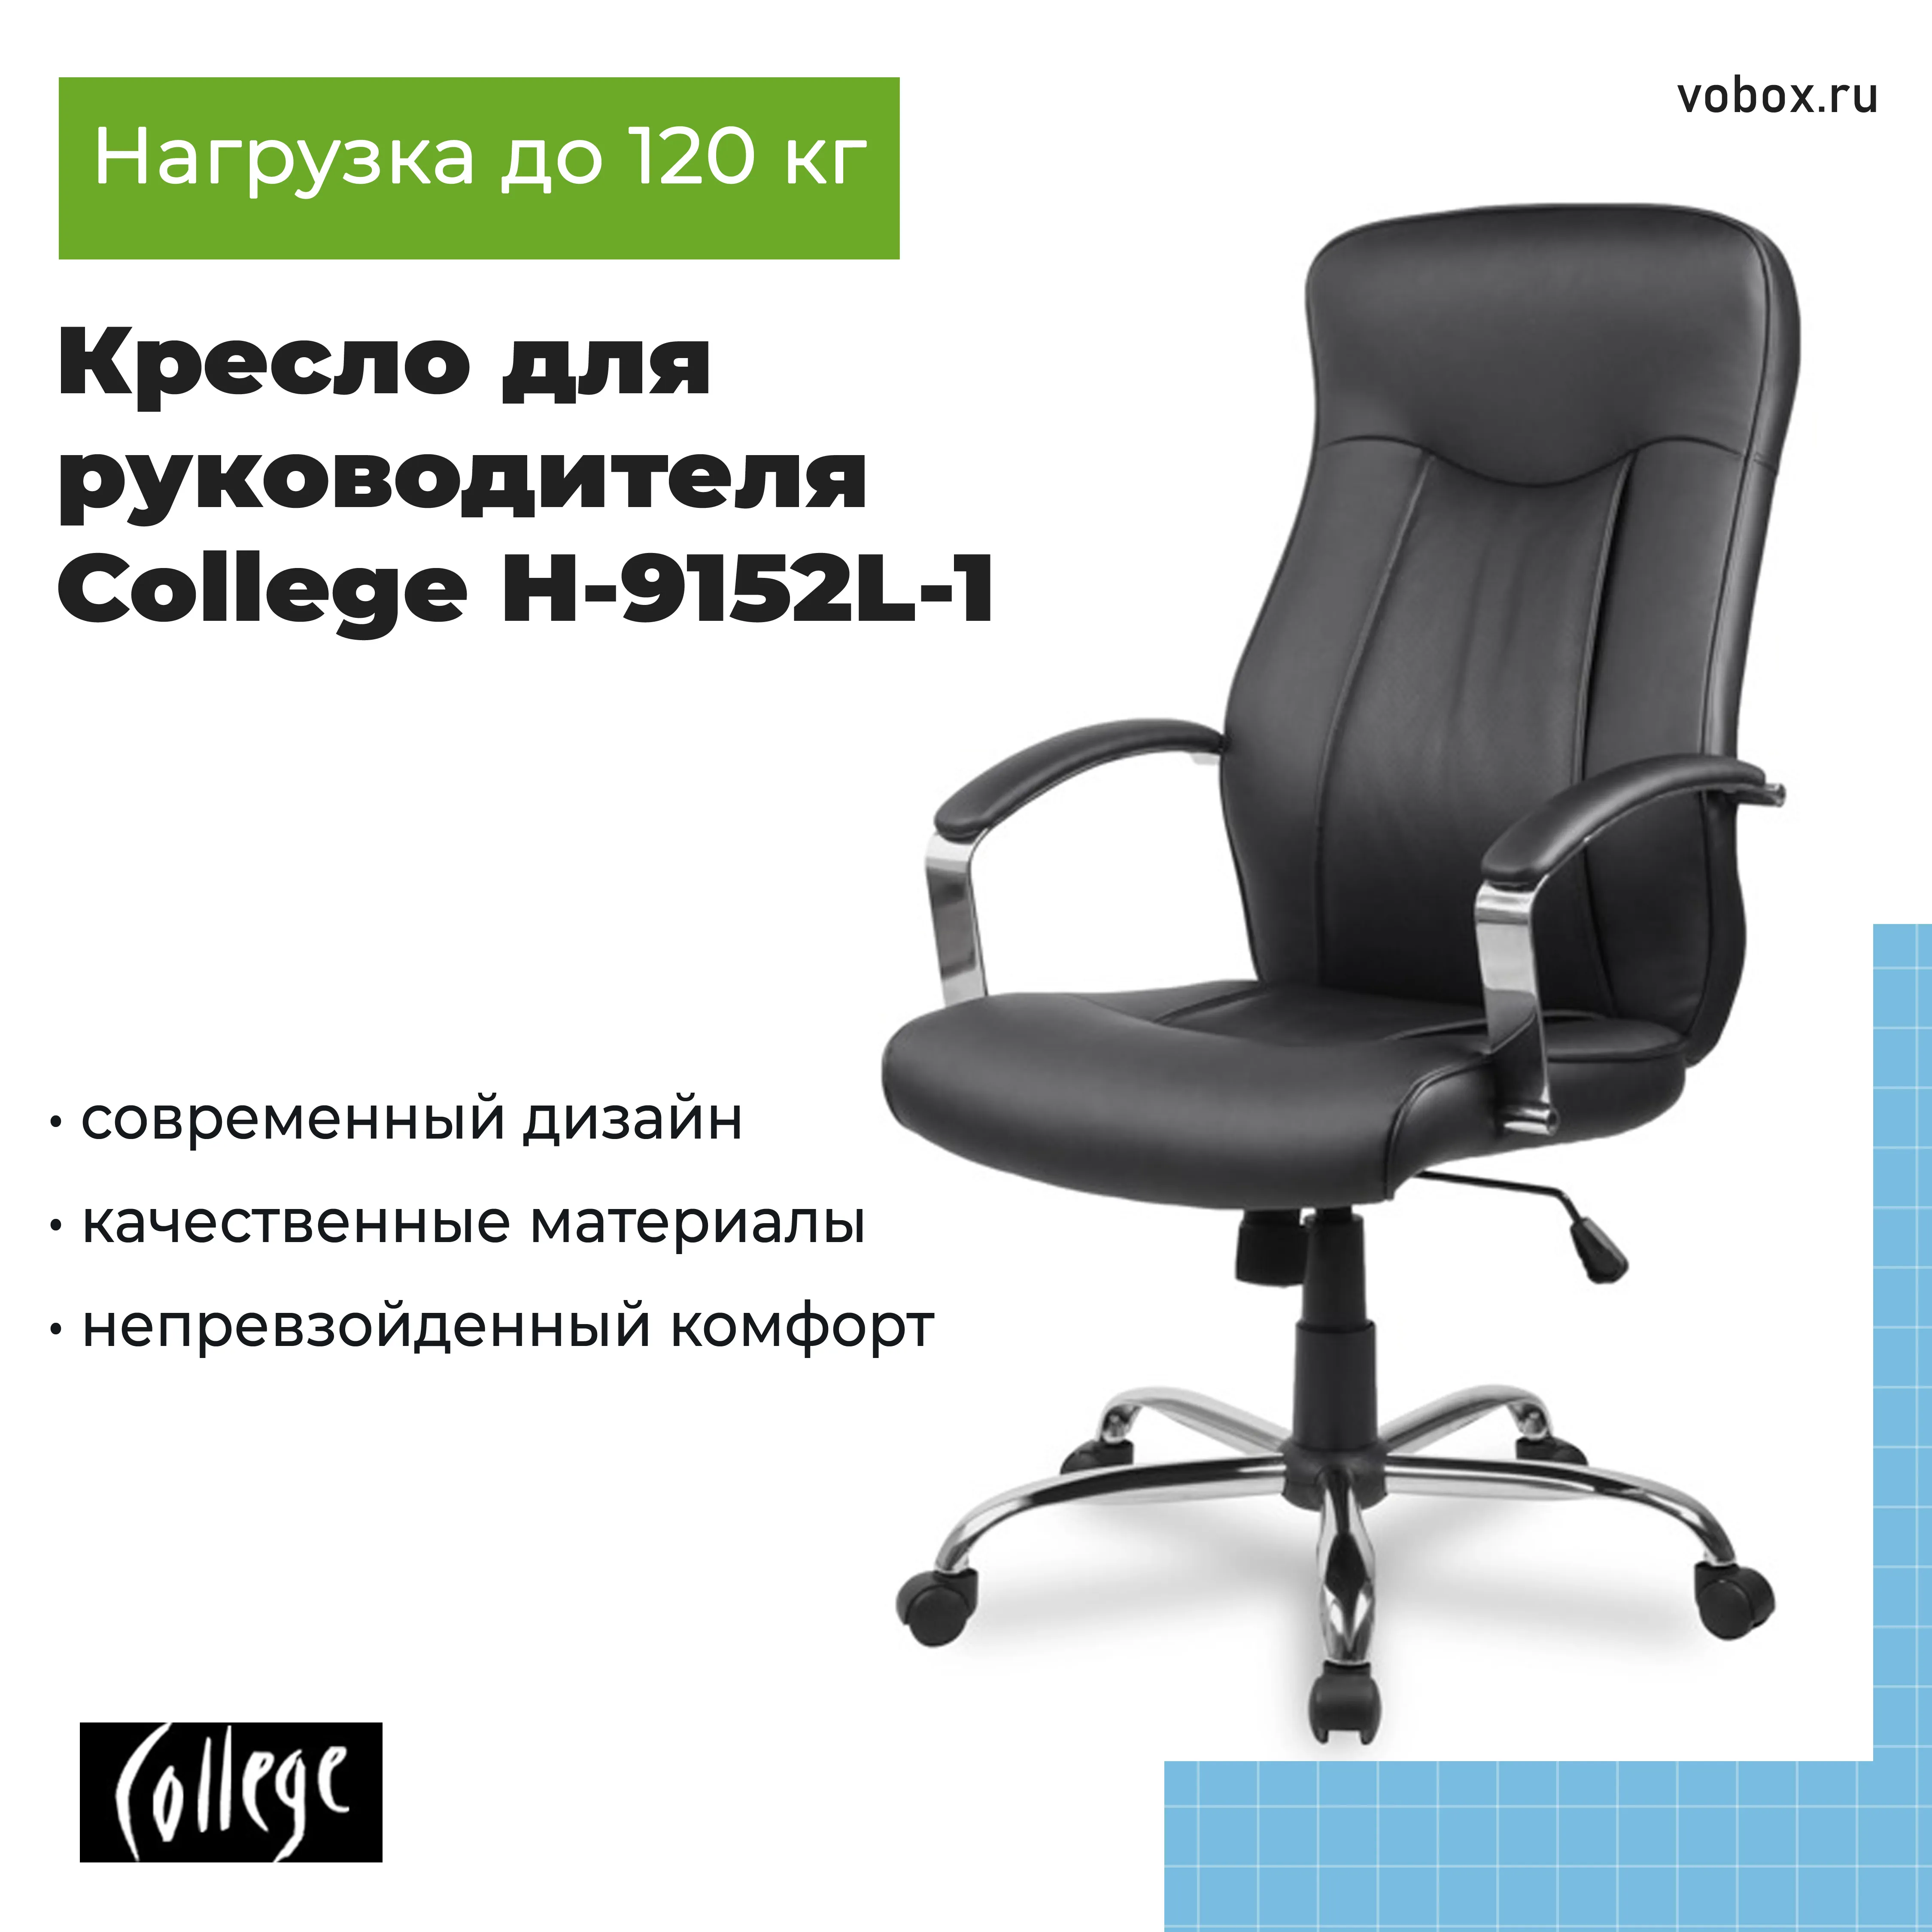 Кресло для руководителя College H-9152L-1 Черный